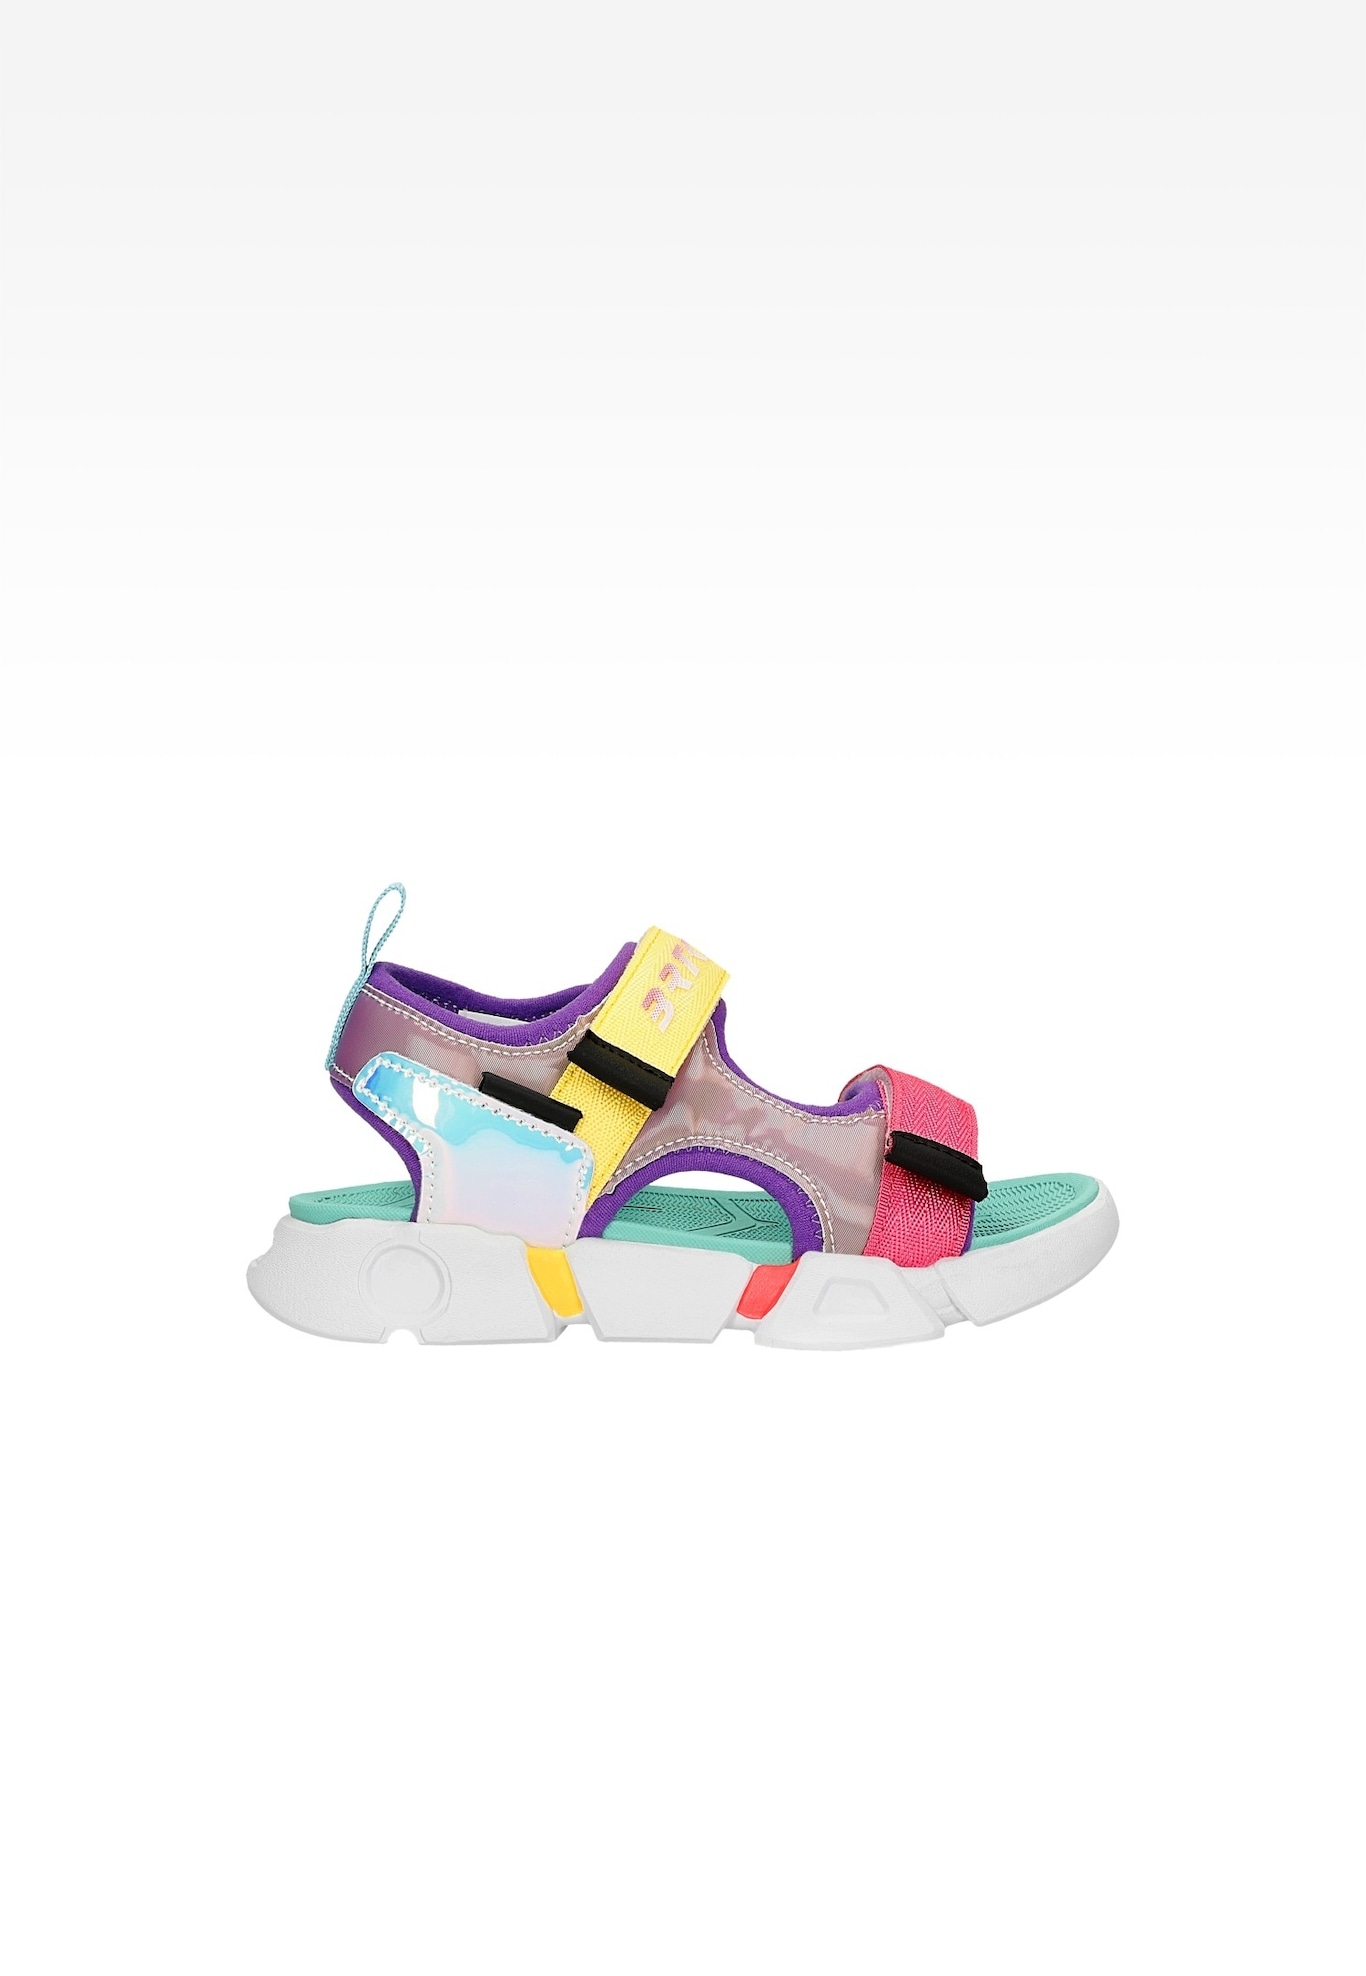 Sandały dla dziewcząt BARTEK 16043202, multi-color